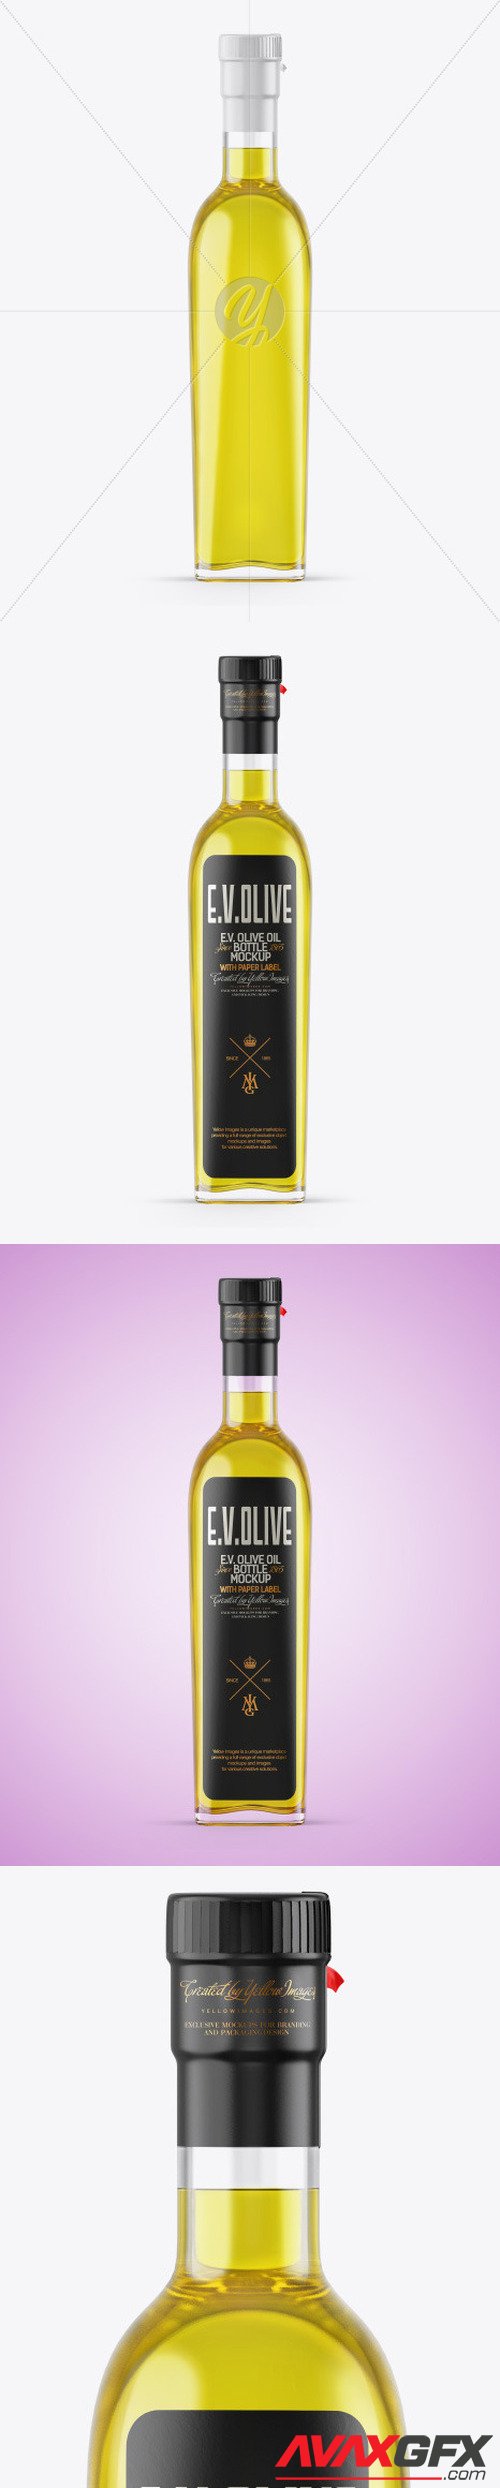 Clear Glass Olive Oil Bottle Mockup 49934 [TIF]